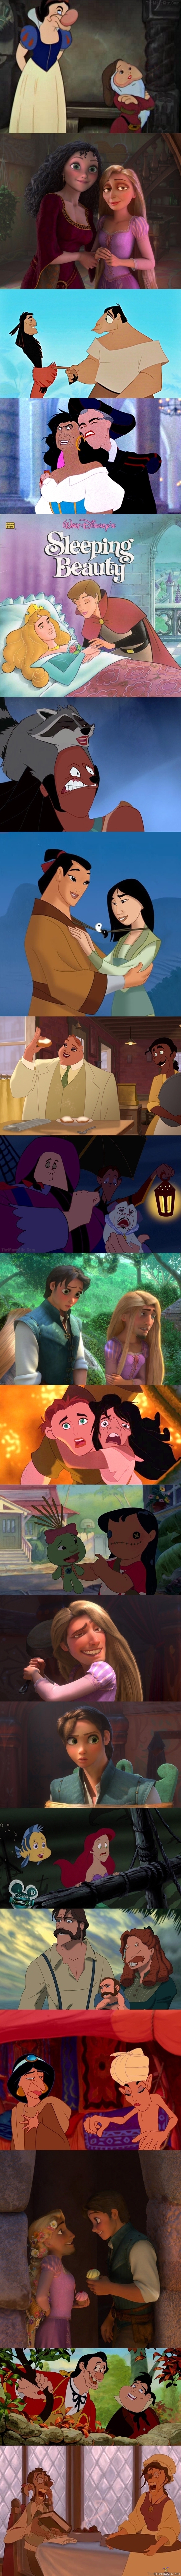 Disney face swaps